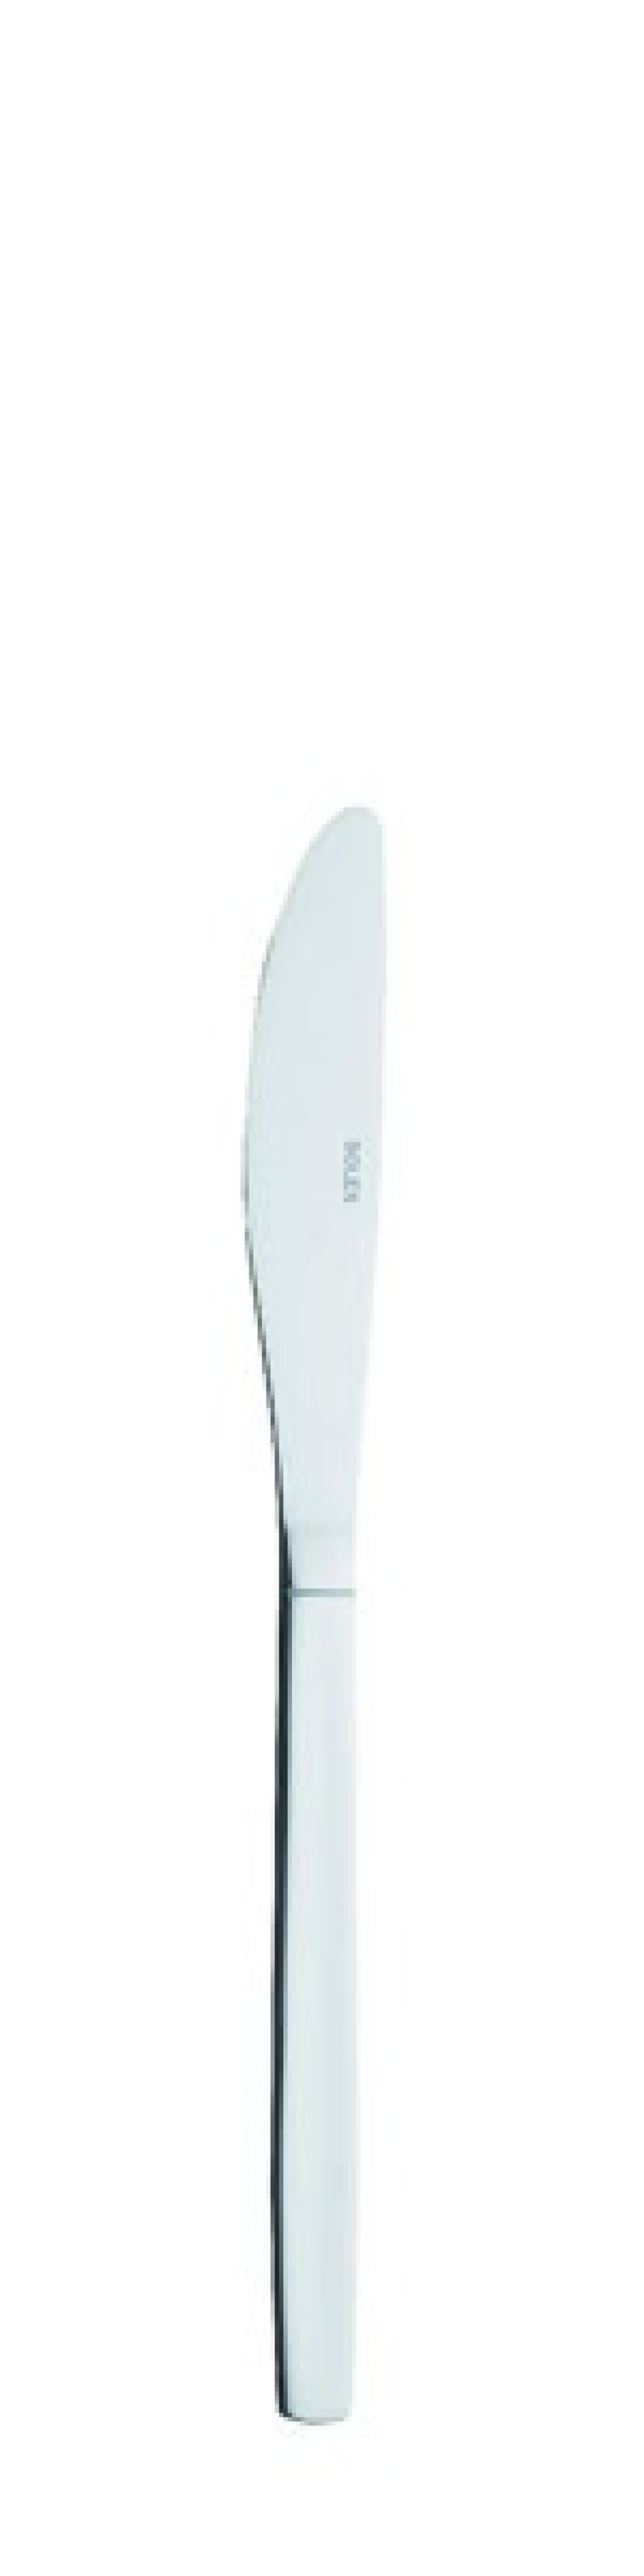 Nóż stołowy TM 80 203 mm - Solex w grupie Nakrycie stołu / Sztućce / Noże w The Kitchen Lab (1284-21405)